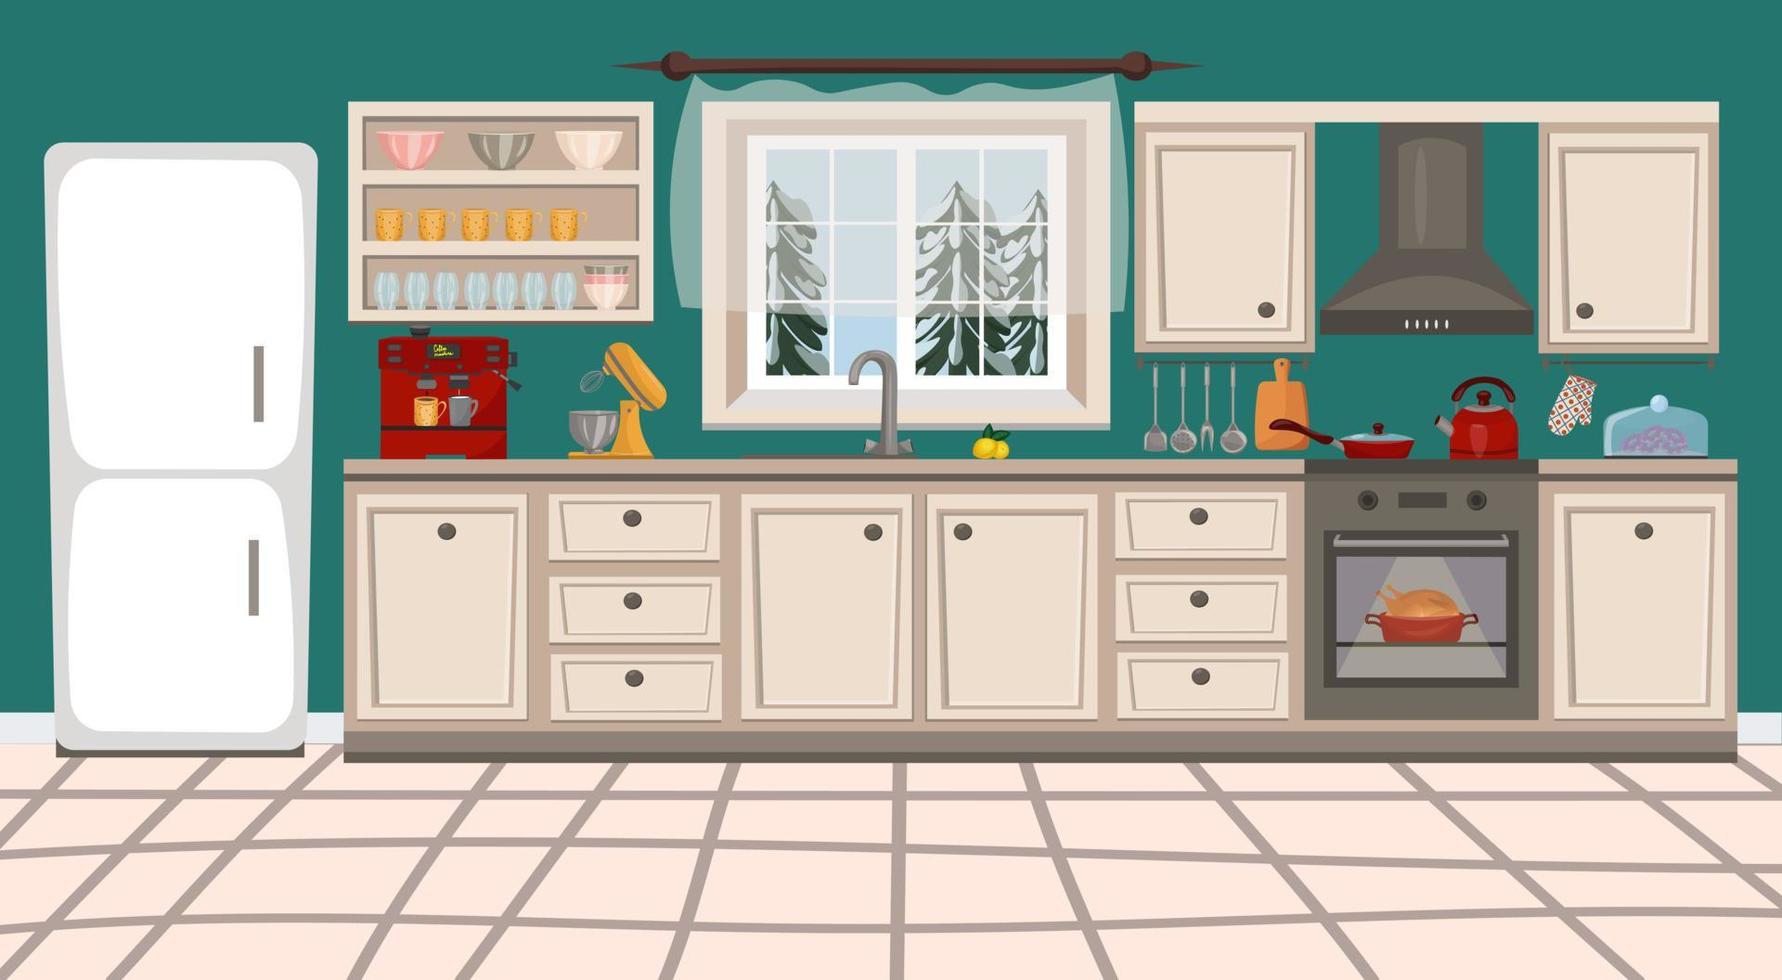 keuken interieur met meubels, fornuis, keukengerei en huishoudelijke apparaten. vectorillustratie in platte cartoonstijl vector